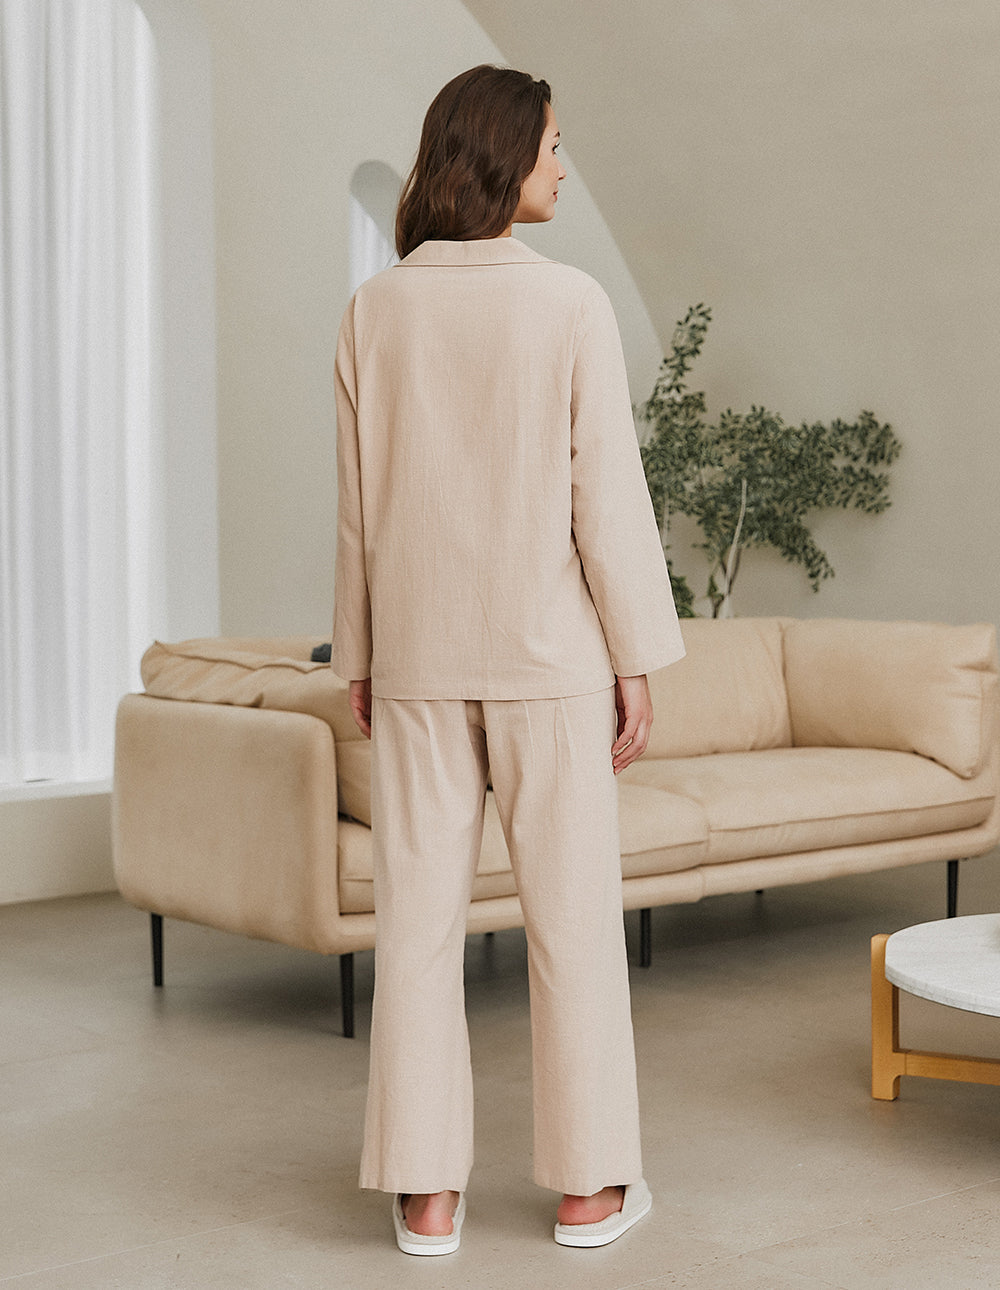 Luxurious Cotton Linen Pajamas Set